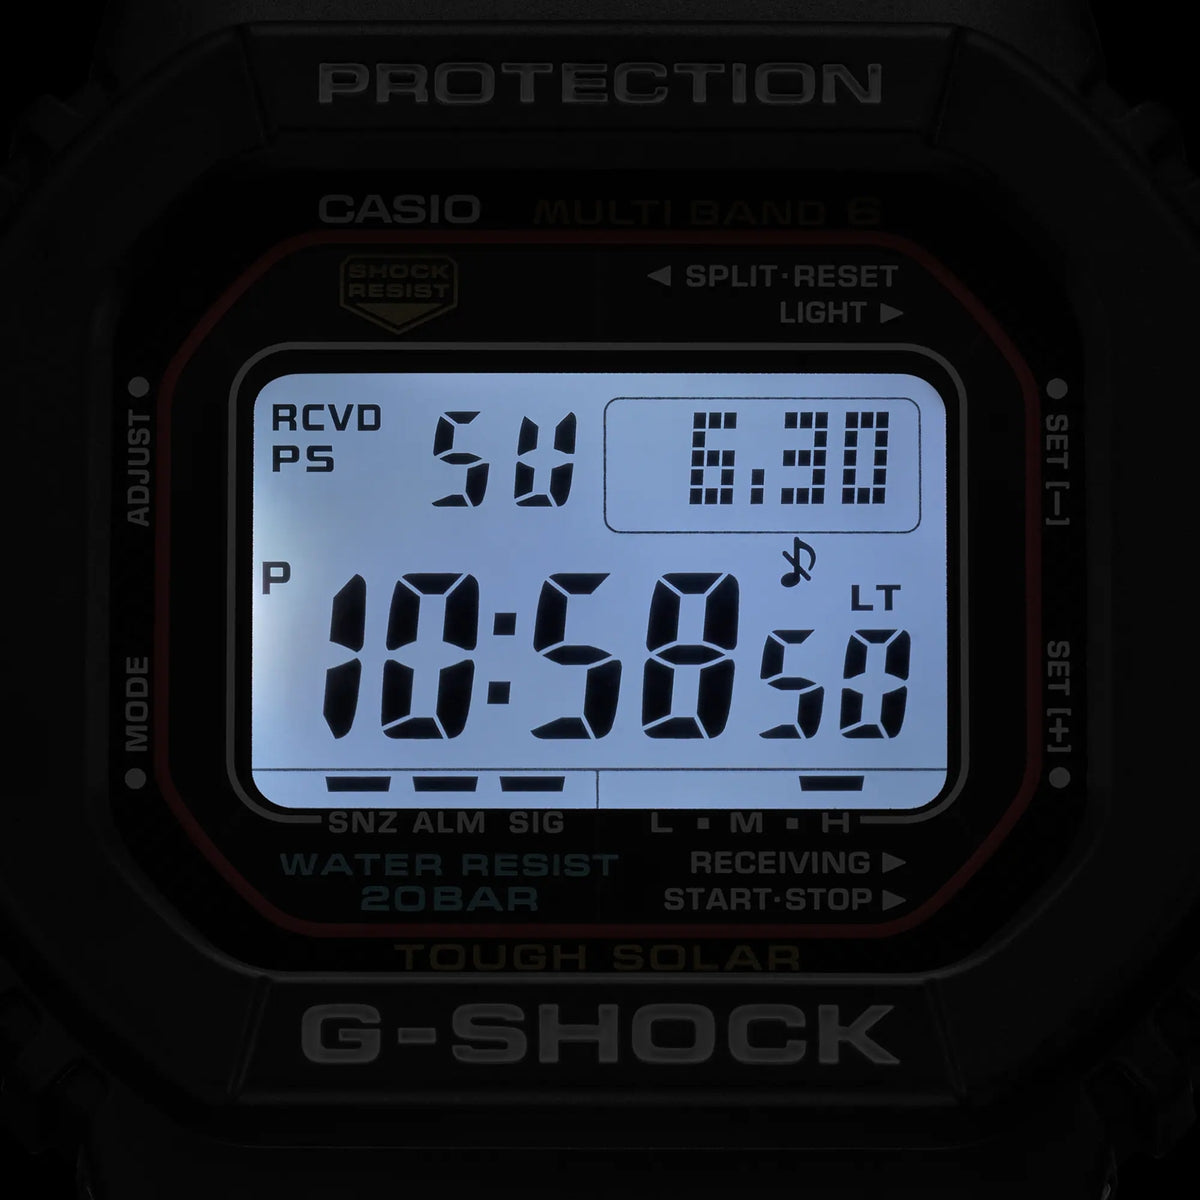 Orologio G-Shock GW-M5610U-1ER carica solare e radio controllato